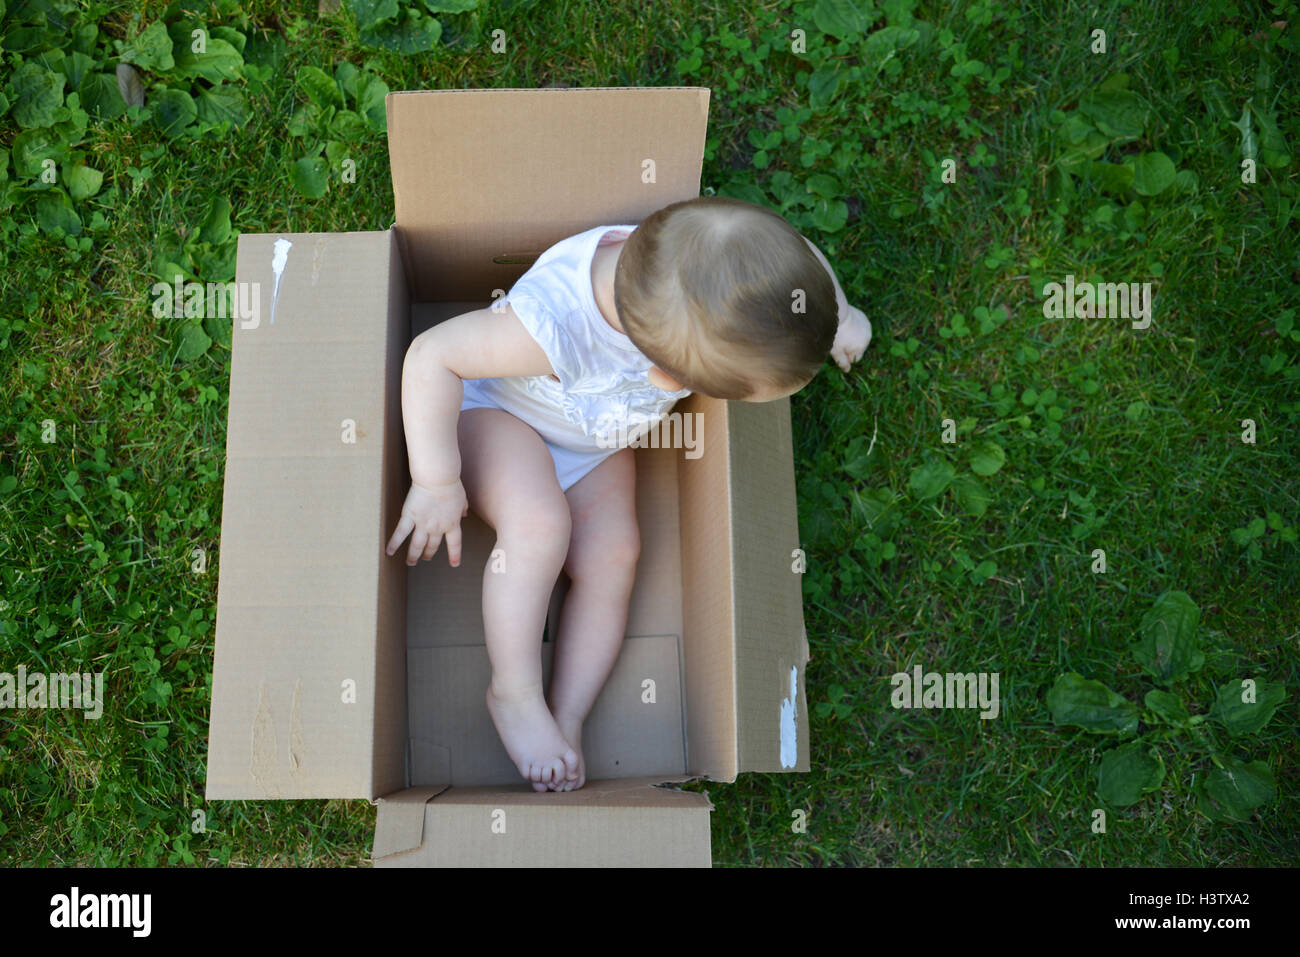 Overhead Schuss eines geschlechtsneutralen Babys in einem Pappkarton auf der grünen Wiese in der Sommersaison in weiß gekleidet. Stockfoto